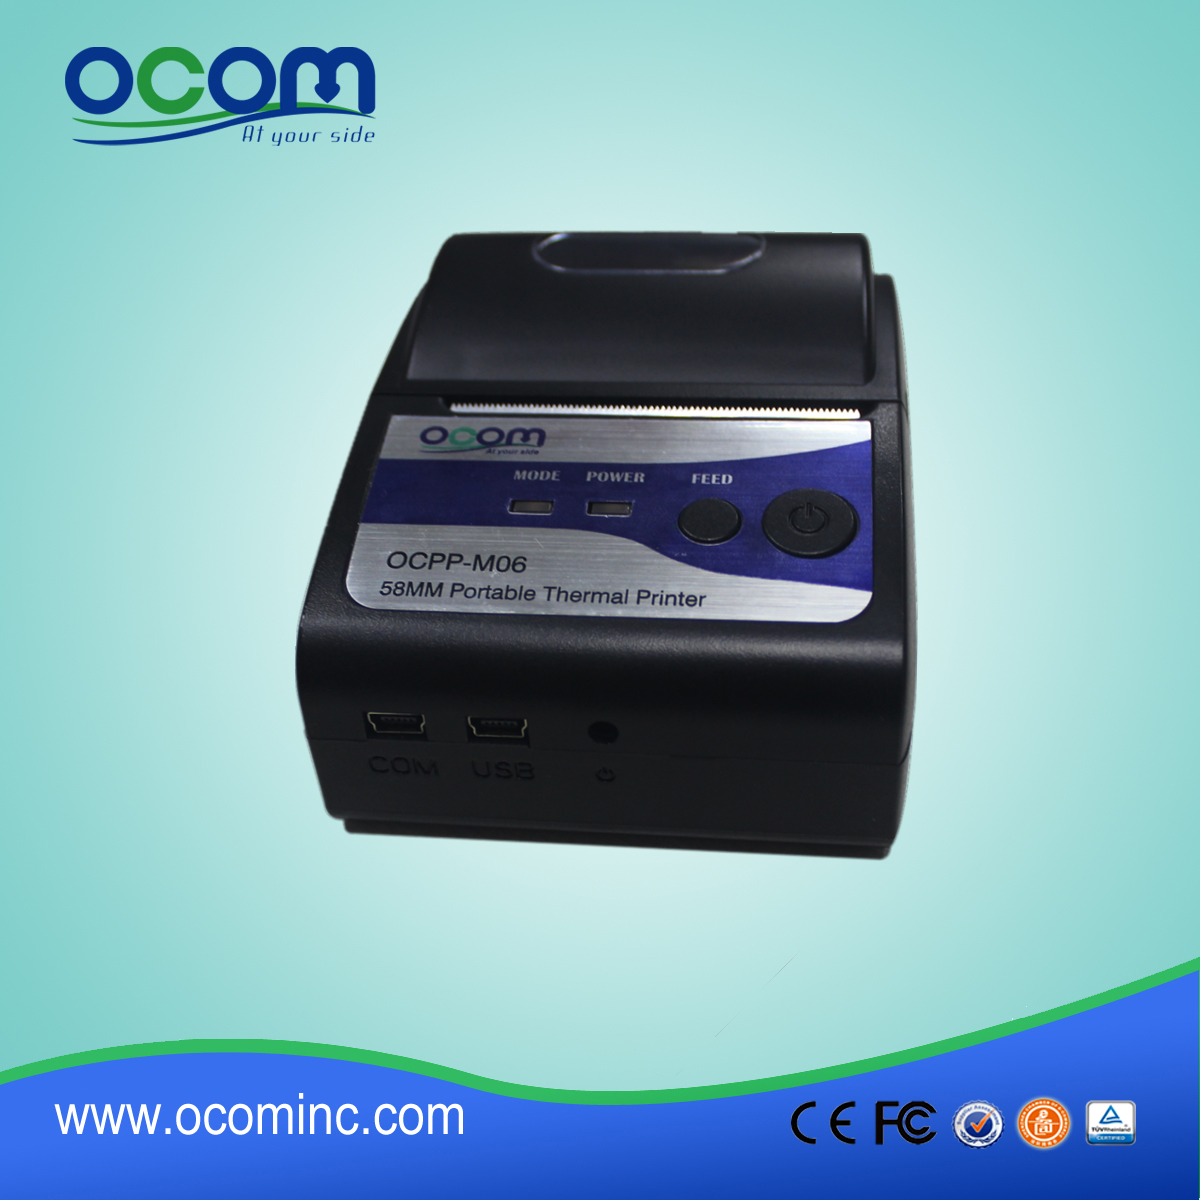 迷你便携式热敏打印机含打印头 OCPP-M06